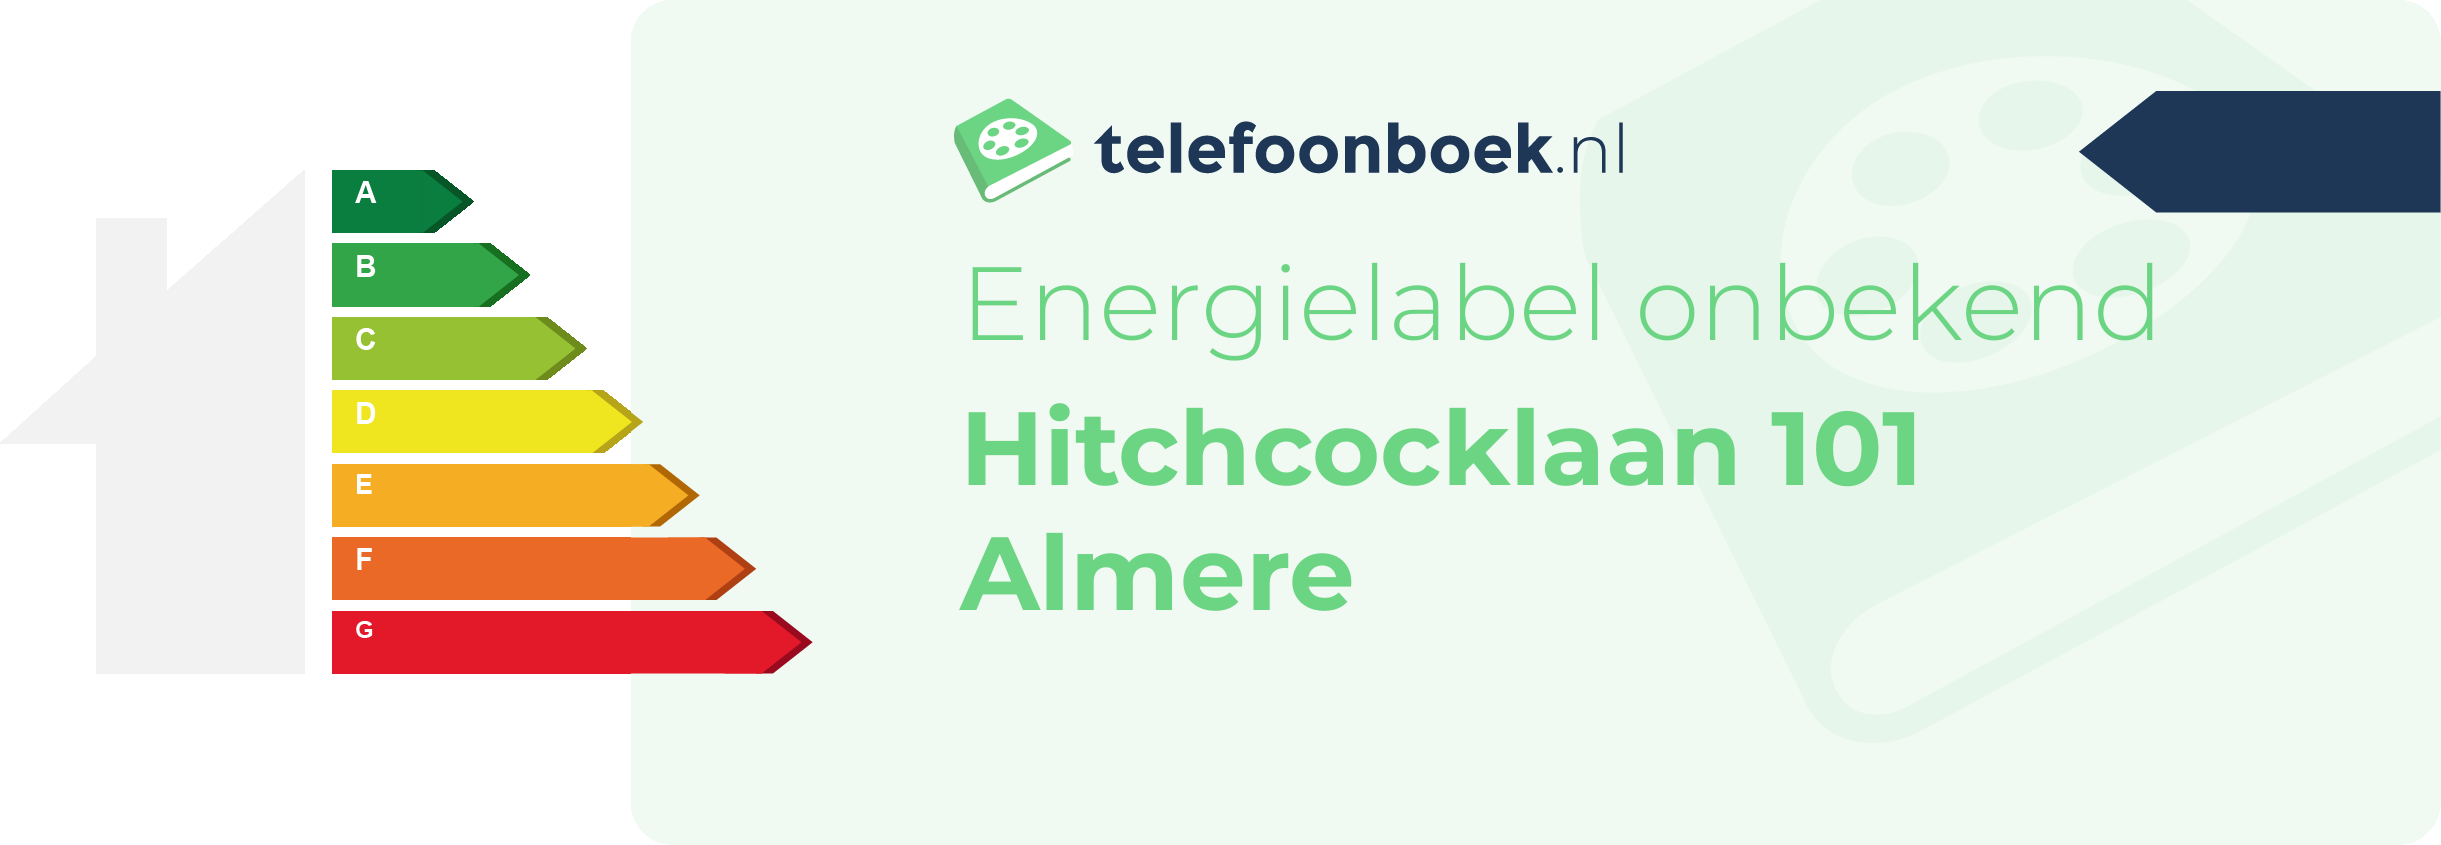 Energielabel Hitchcocklaan 101 Almere